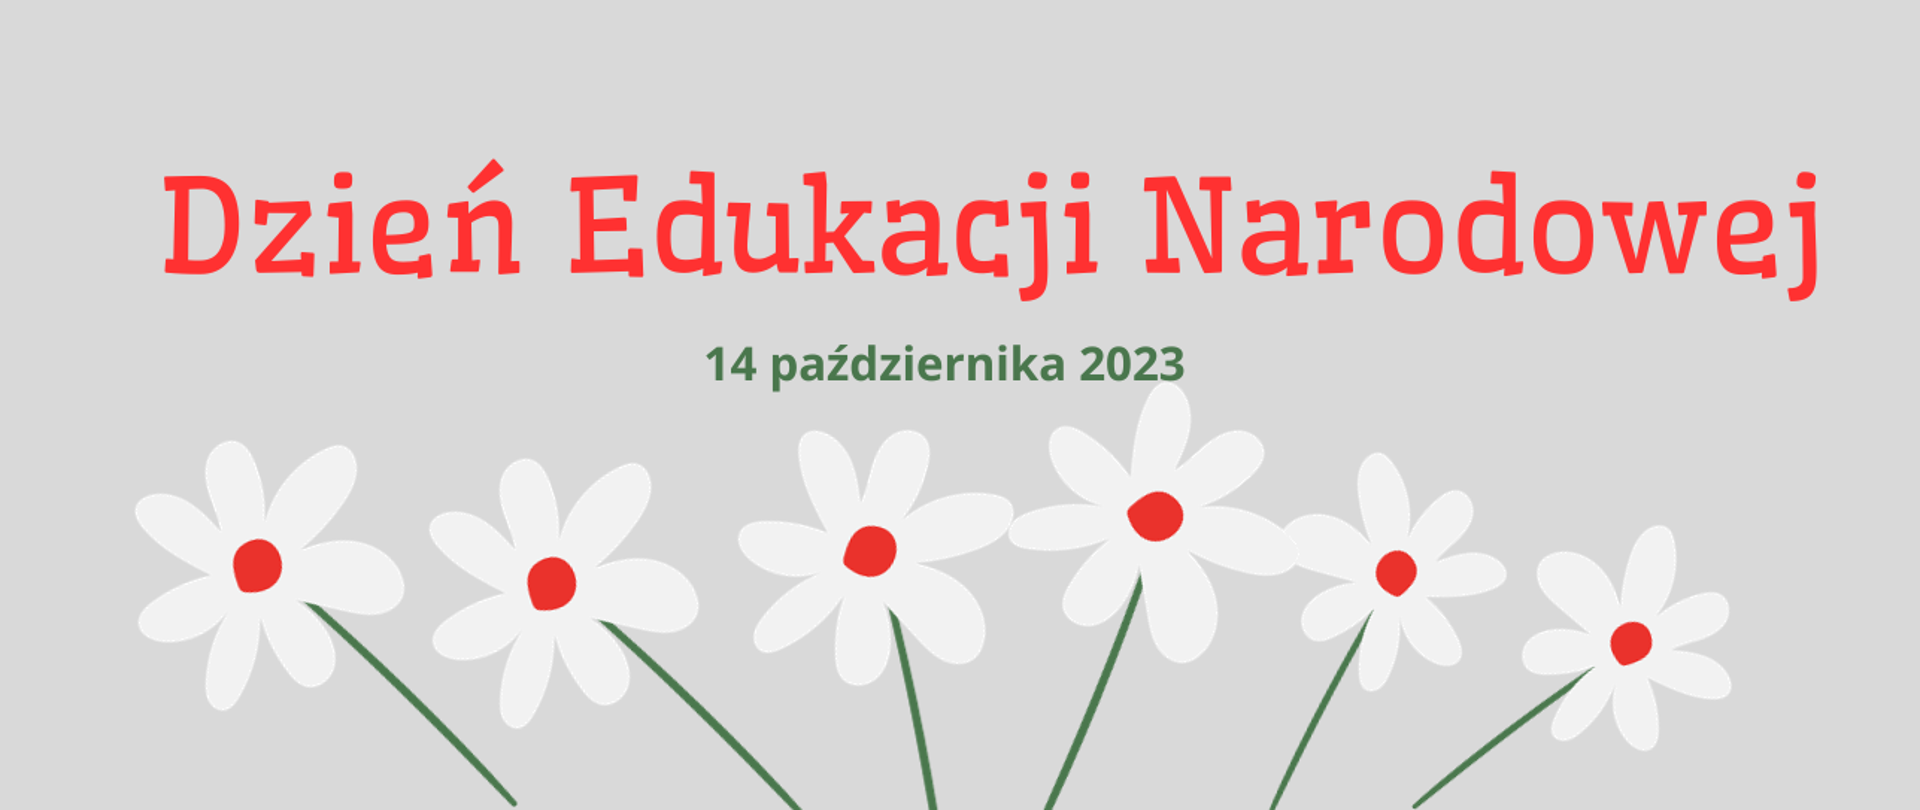 Baner na Dzień Edukacji Narodowej - napis czerwony i zielona data grafika z białoczerwonymi kwiatami na szarym tle.